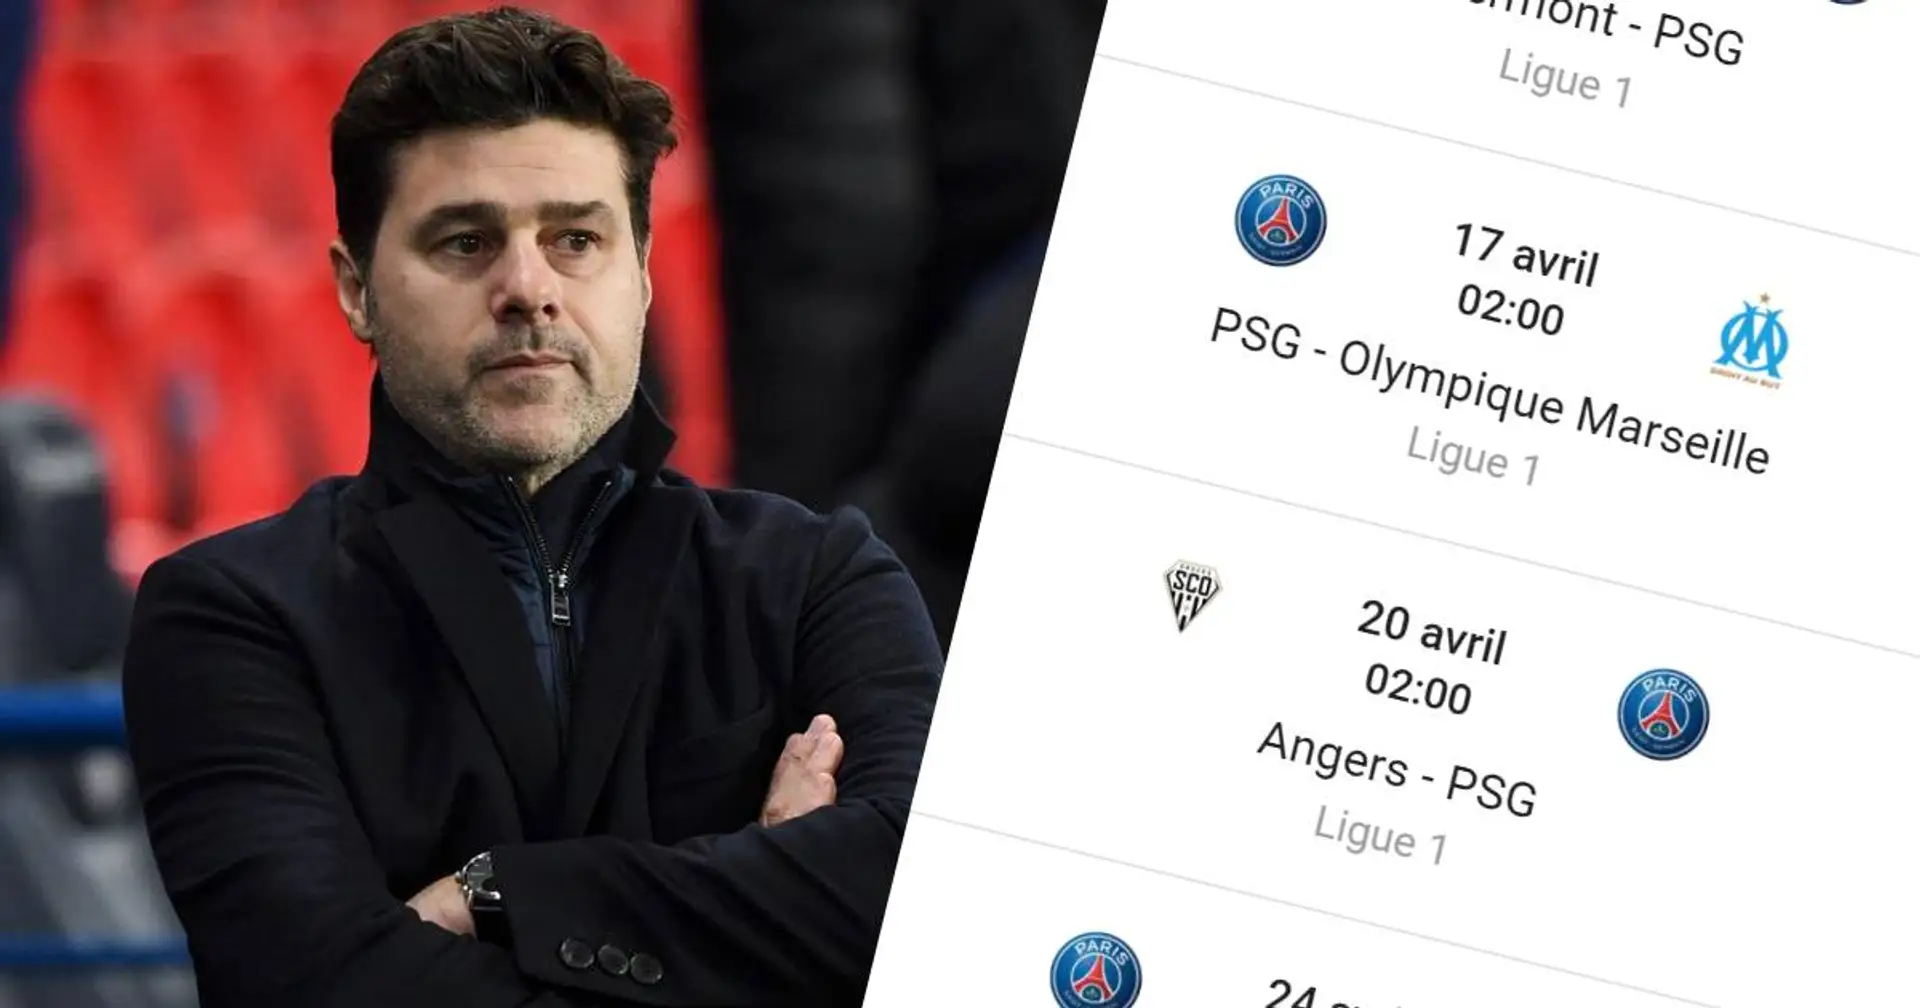 Quatre mois restants: aperçu des 18 matchs restants du PSG en Ligue 1